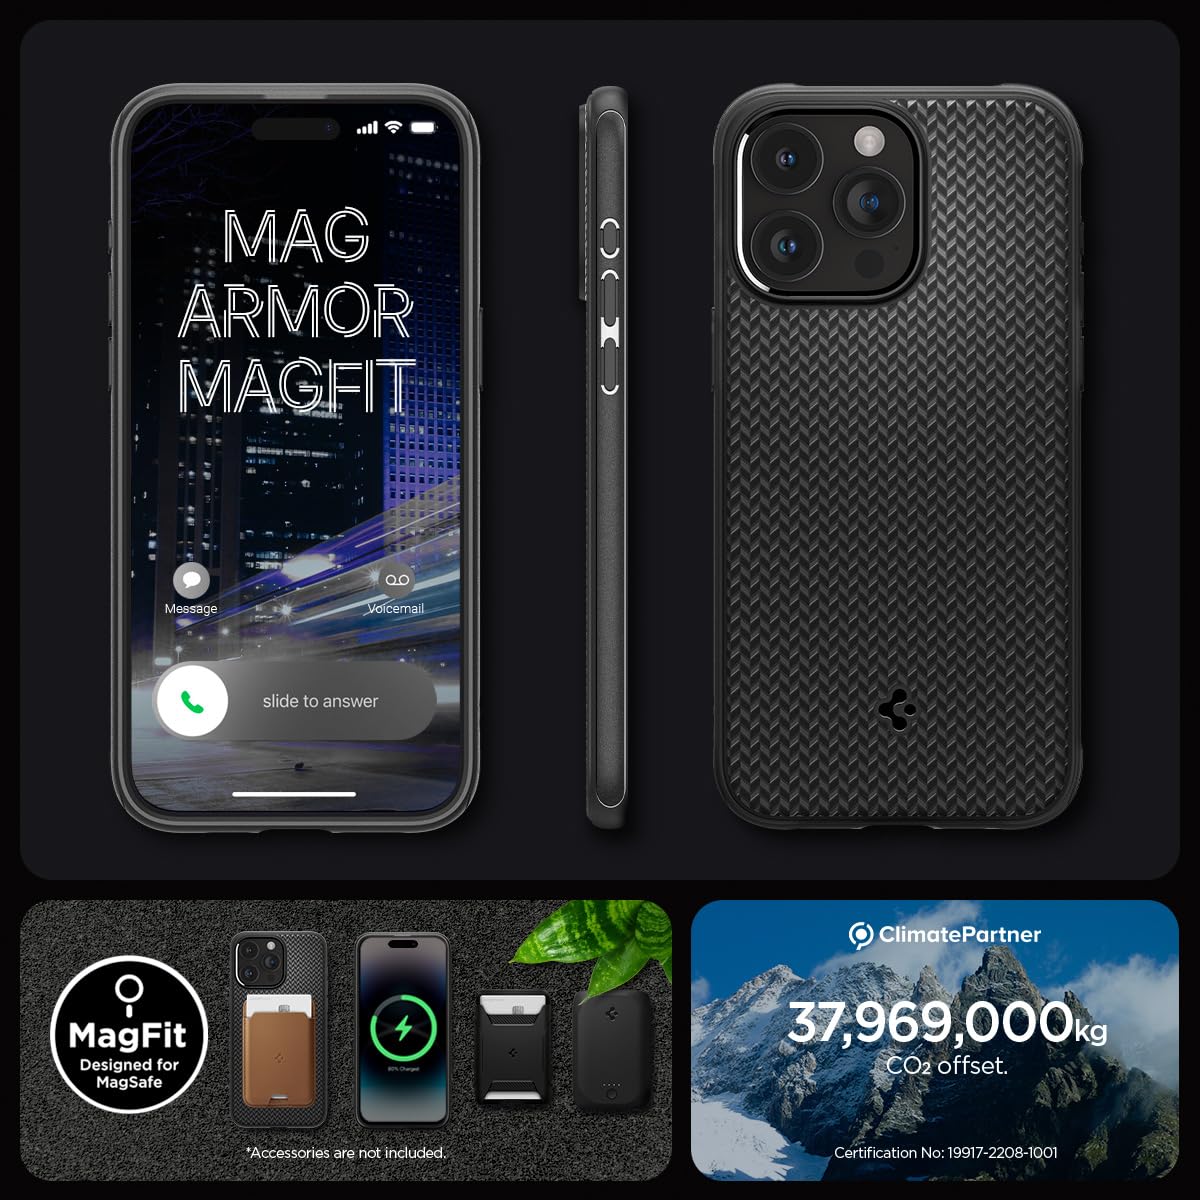 Spigen Mag Armor MagFit Designed for iPhone 15 Pro Case (2023) - Matte Black